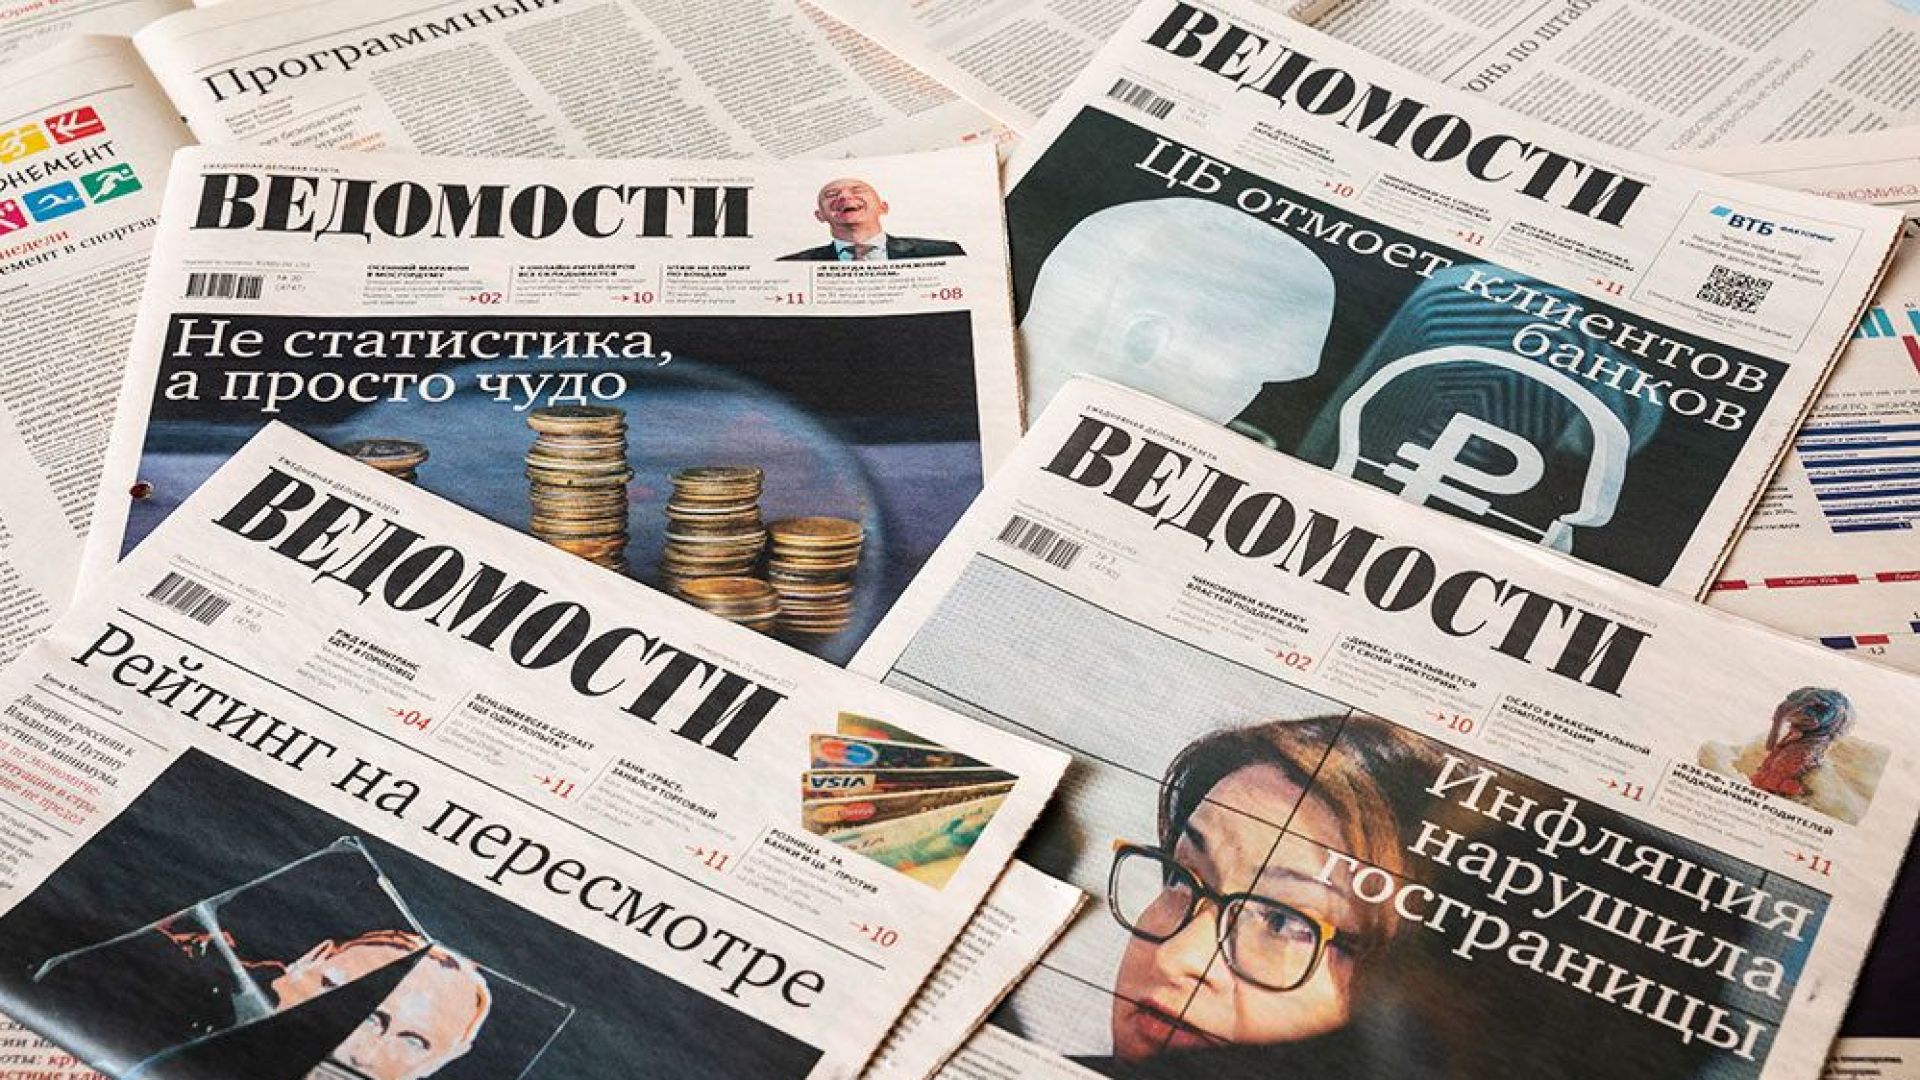 Петима заместник главни редактори на водещия руски икономически всекидневник Ведомости подадоха